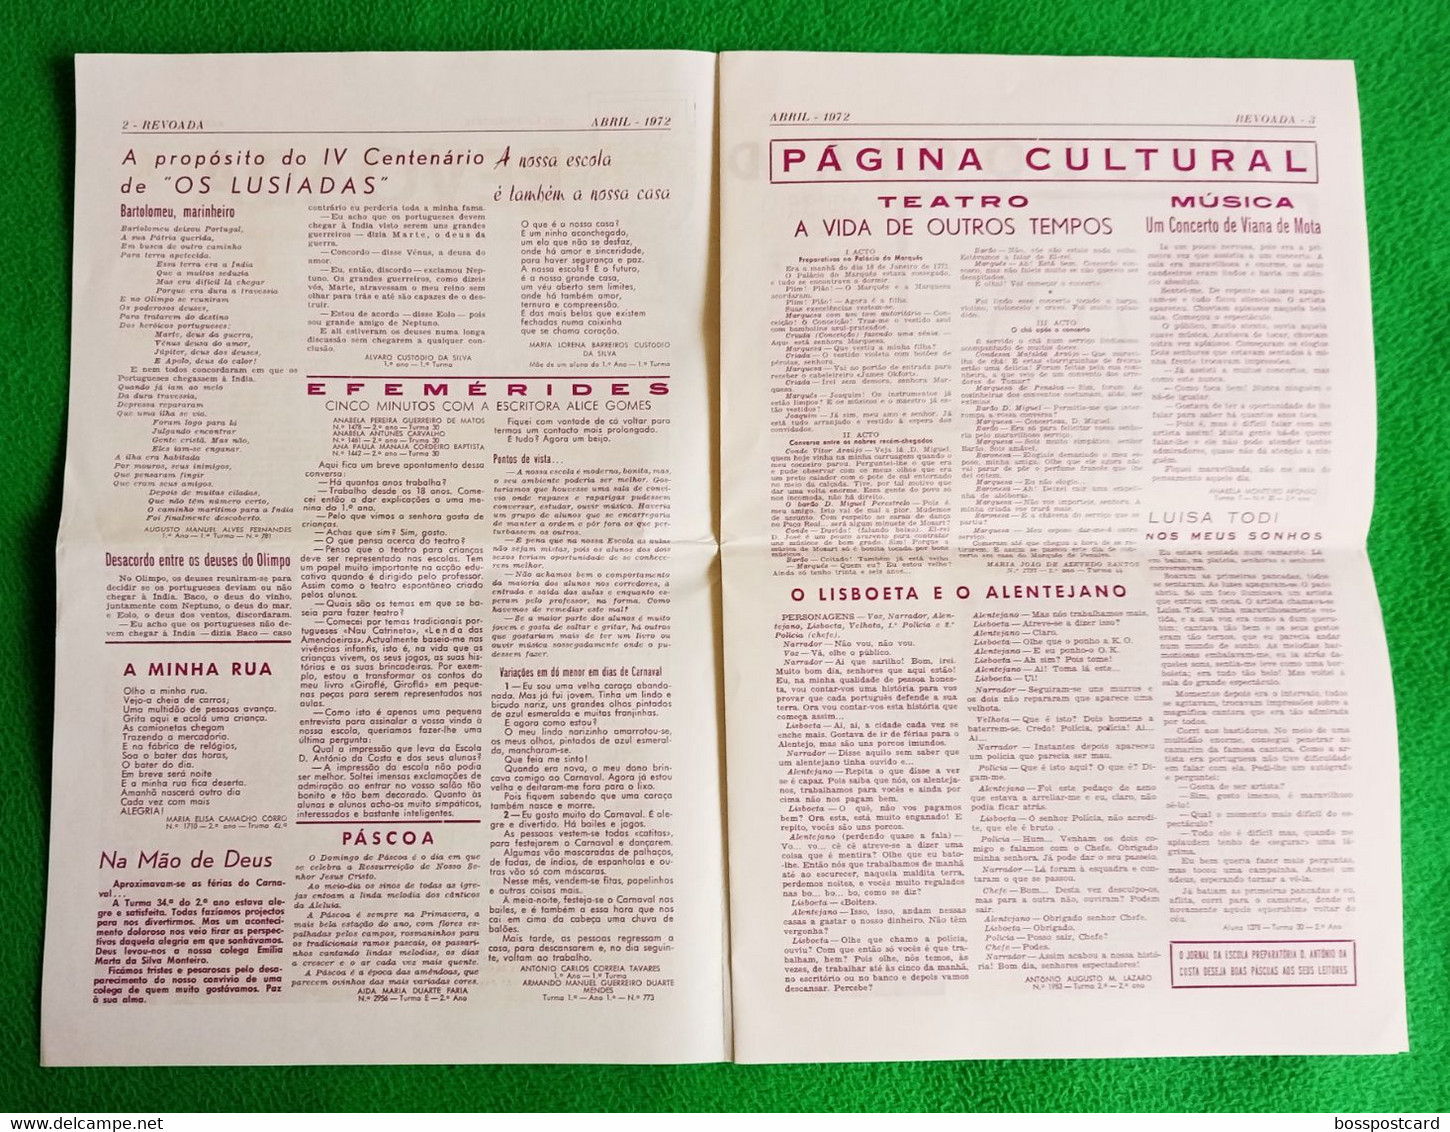 Almada - Jornal Revoada Nº 9, Abril De 1972 - Escola Preparatória De D. António Da Costa - Imprensa - Portugal - Informations Générales